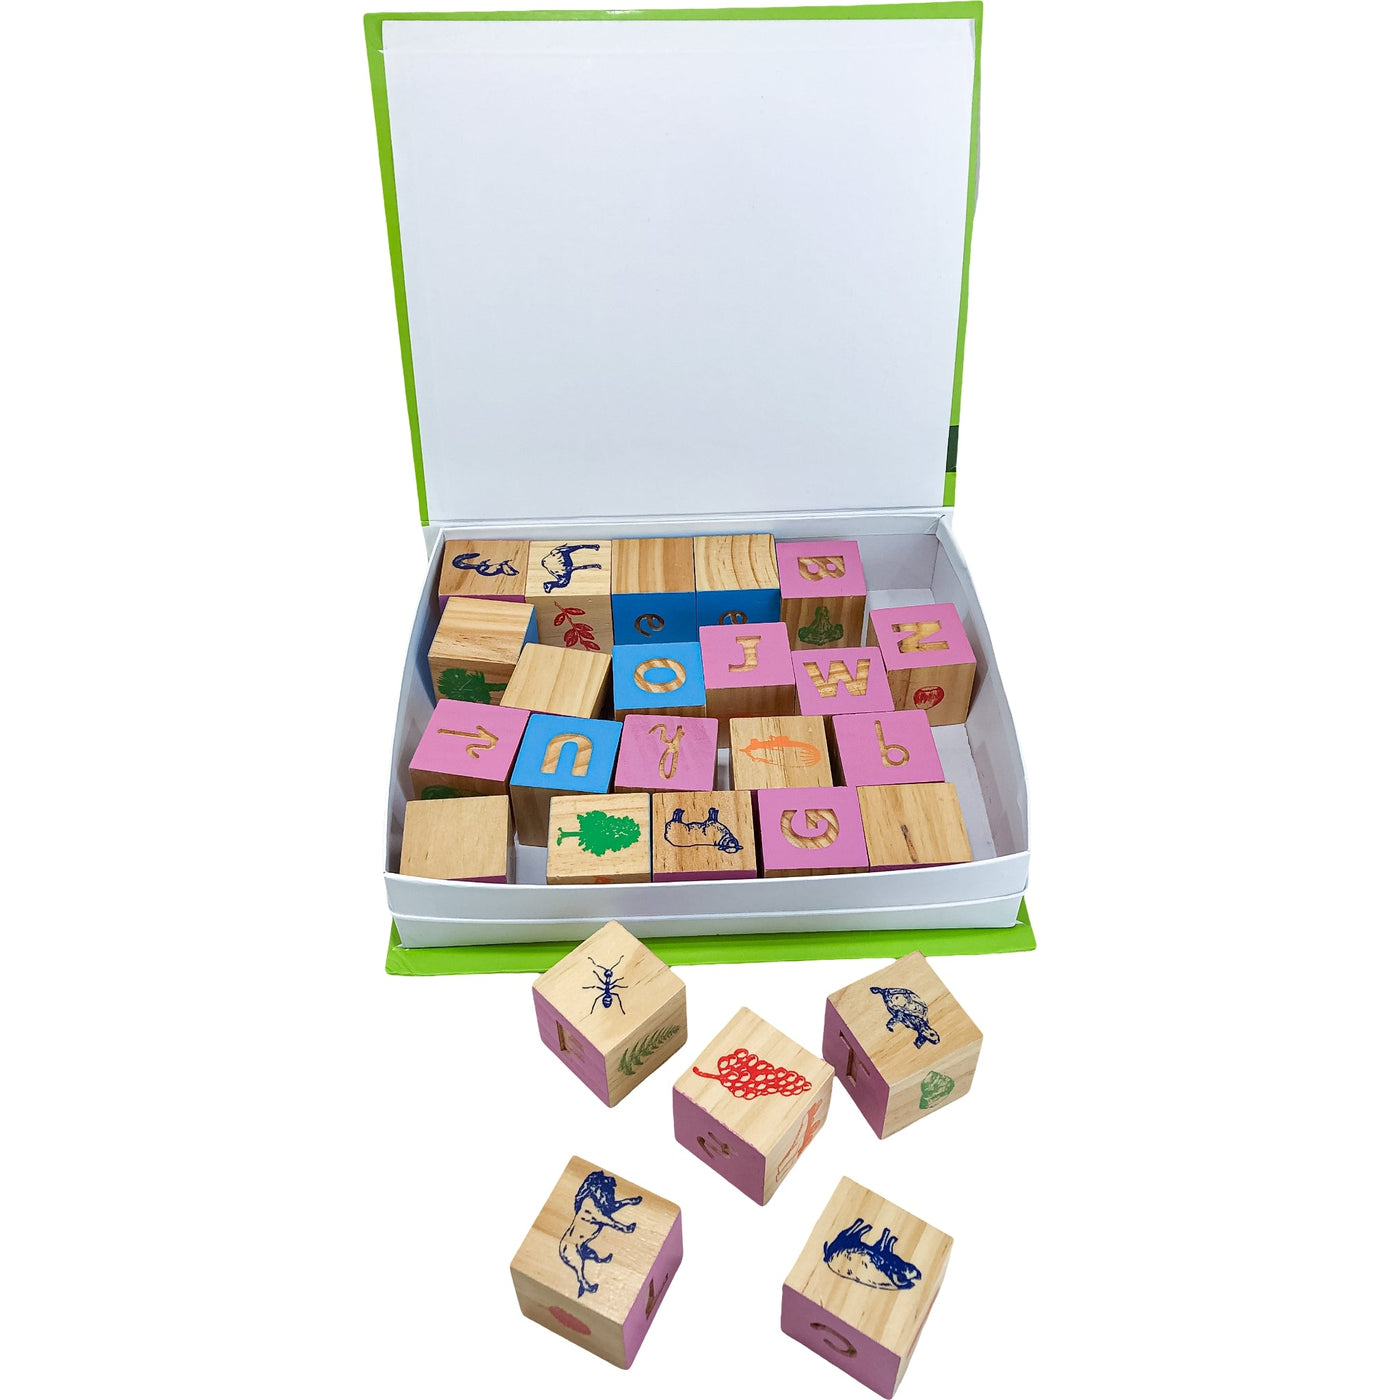 Jeu éducatif "26 Cubes Lettres Montessori" de seconde main en bois pour enfant à partir de 3 ans - Vue 2